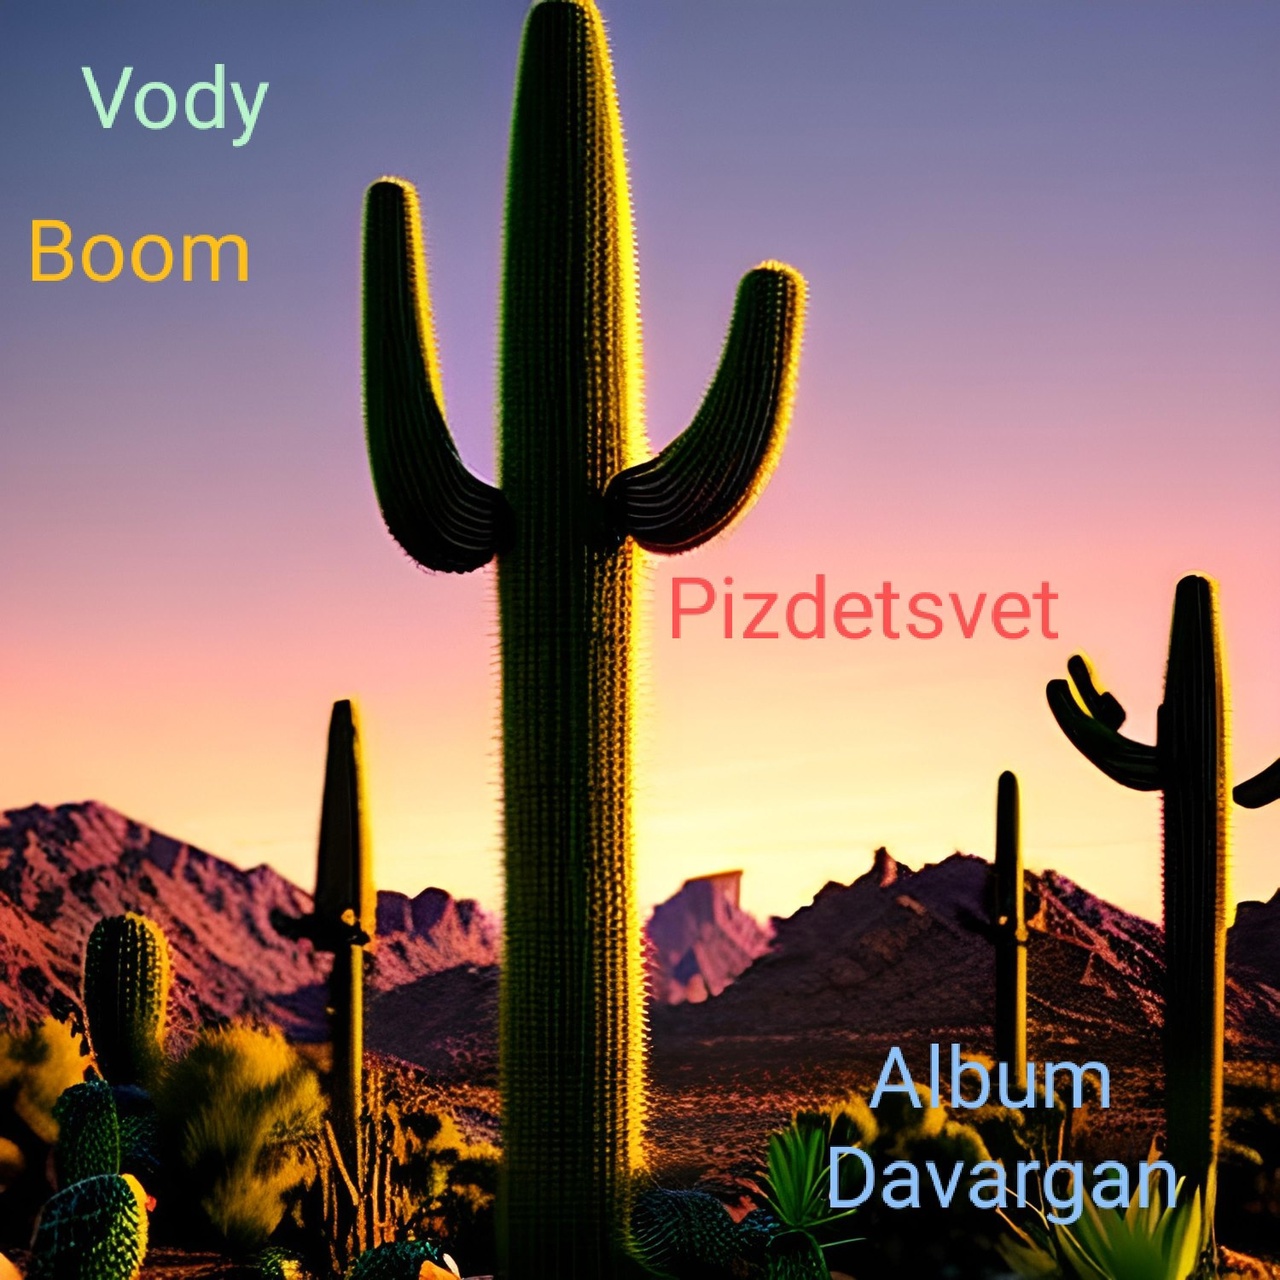 Vody Boom — Pizdetsvet cover artwork